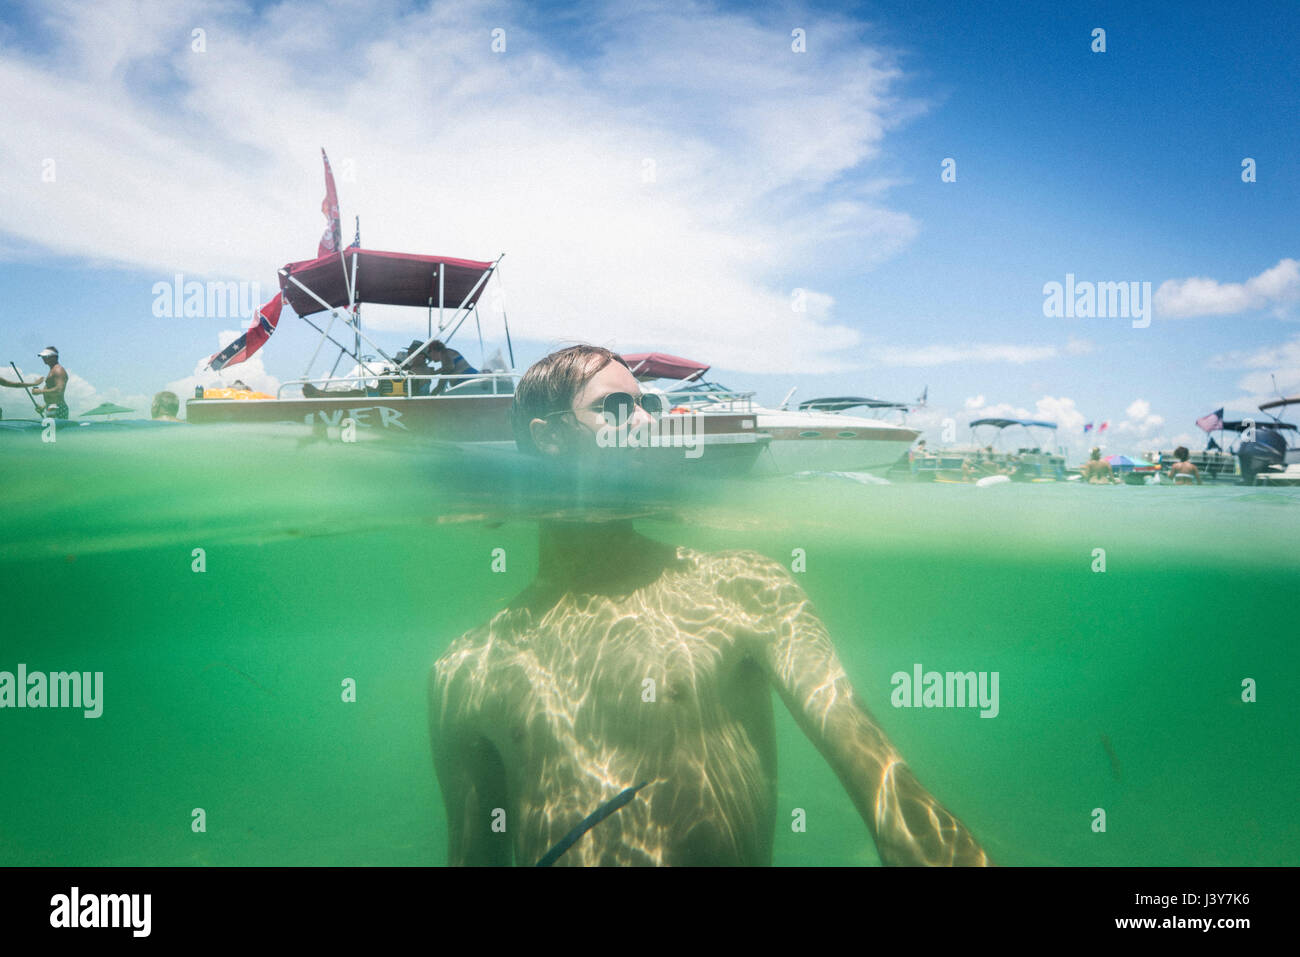 Split-Wasserstand Oberfläche Bild von Teenager in Wasser, Krabbe Insel, Costa Smeralda, Golf von Mexiko, USA Stockfoto